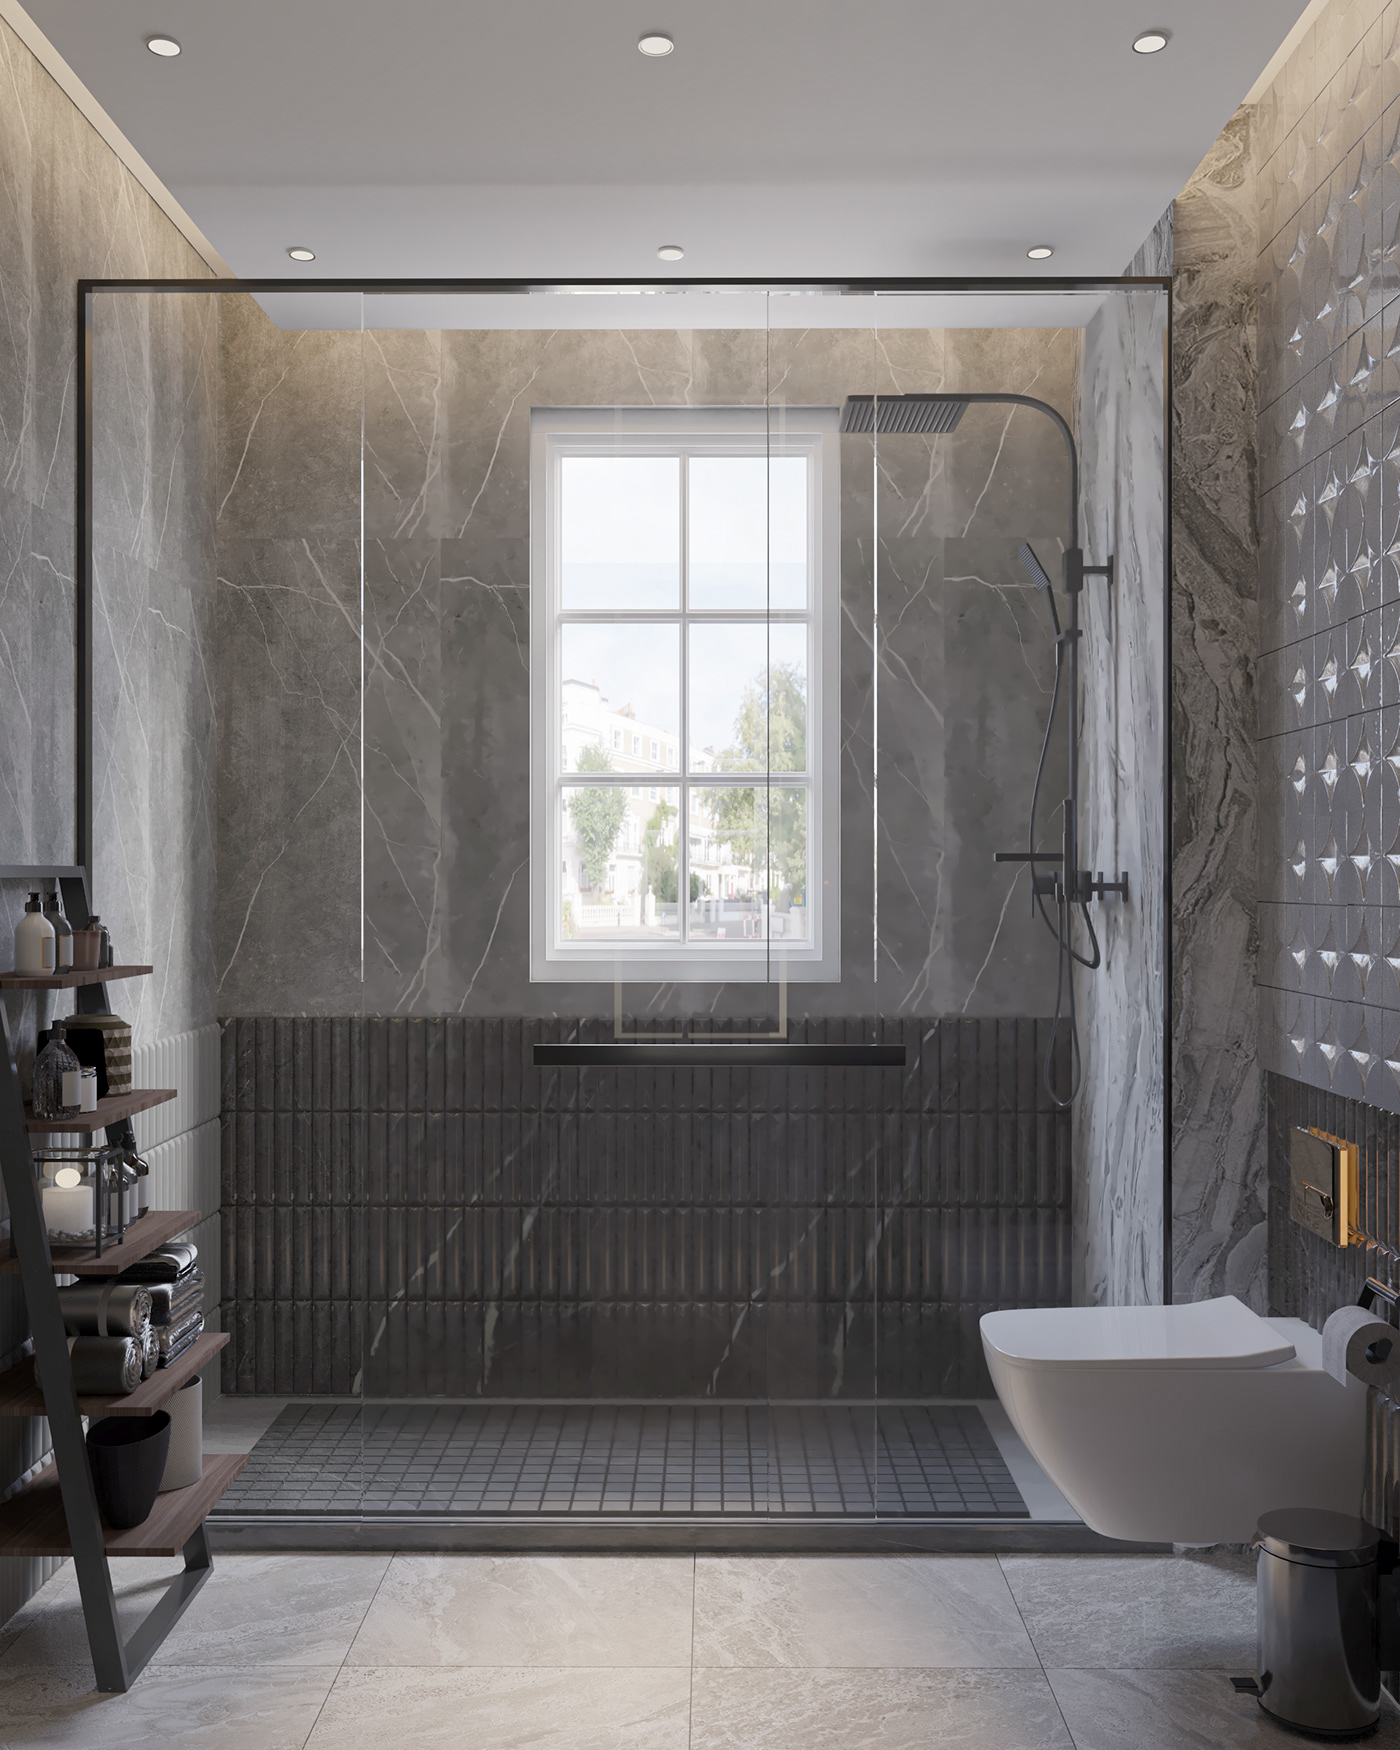 3ds max architecture bathroom design CGI corona interior design  KSA Modern Design Render visualization